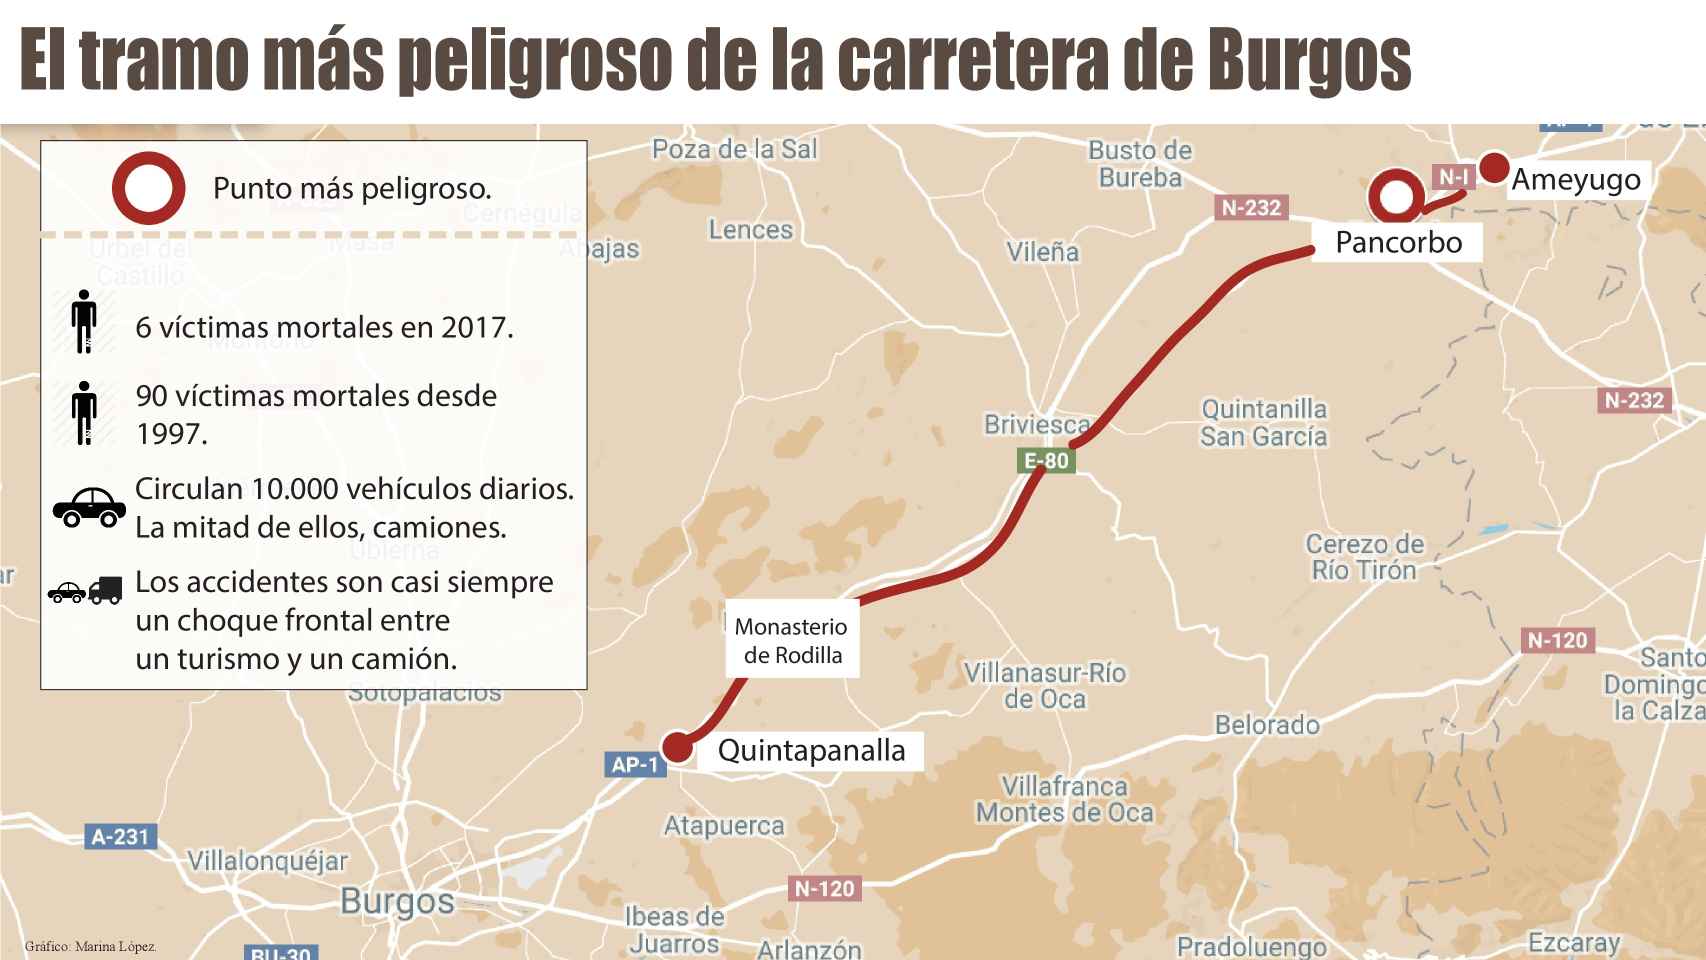 De Quintanapalla a Ameyugo: el recorrido por uno de los tramos más negros de las carreteras españolas.